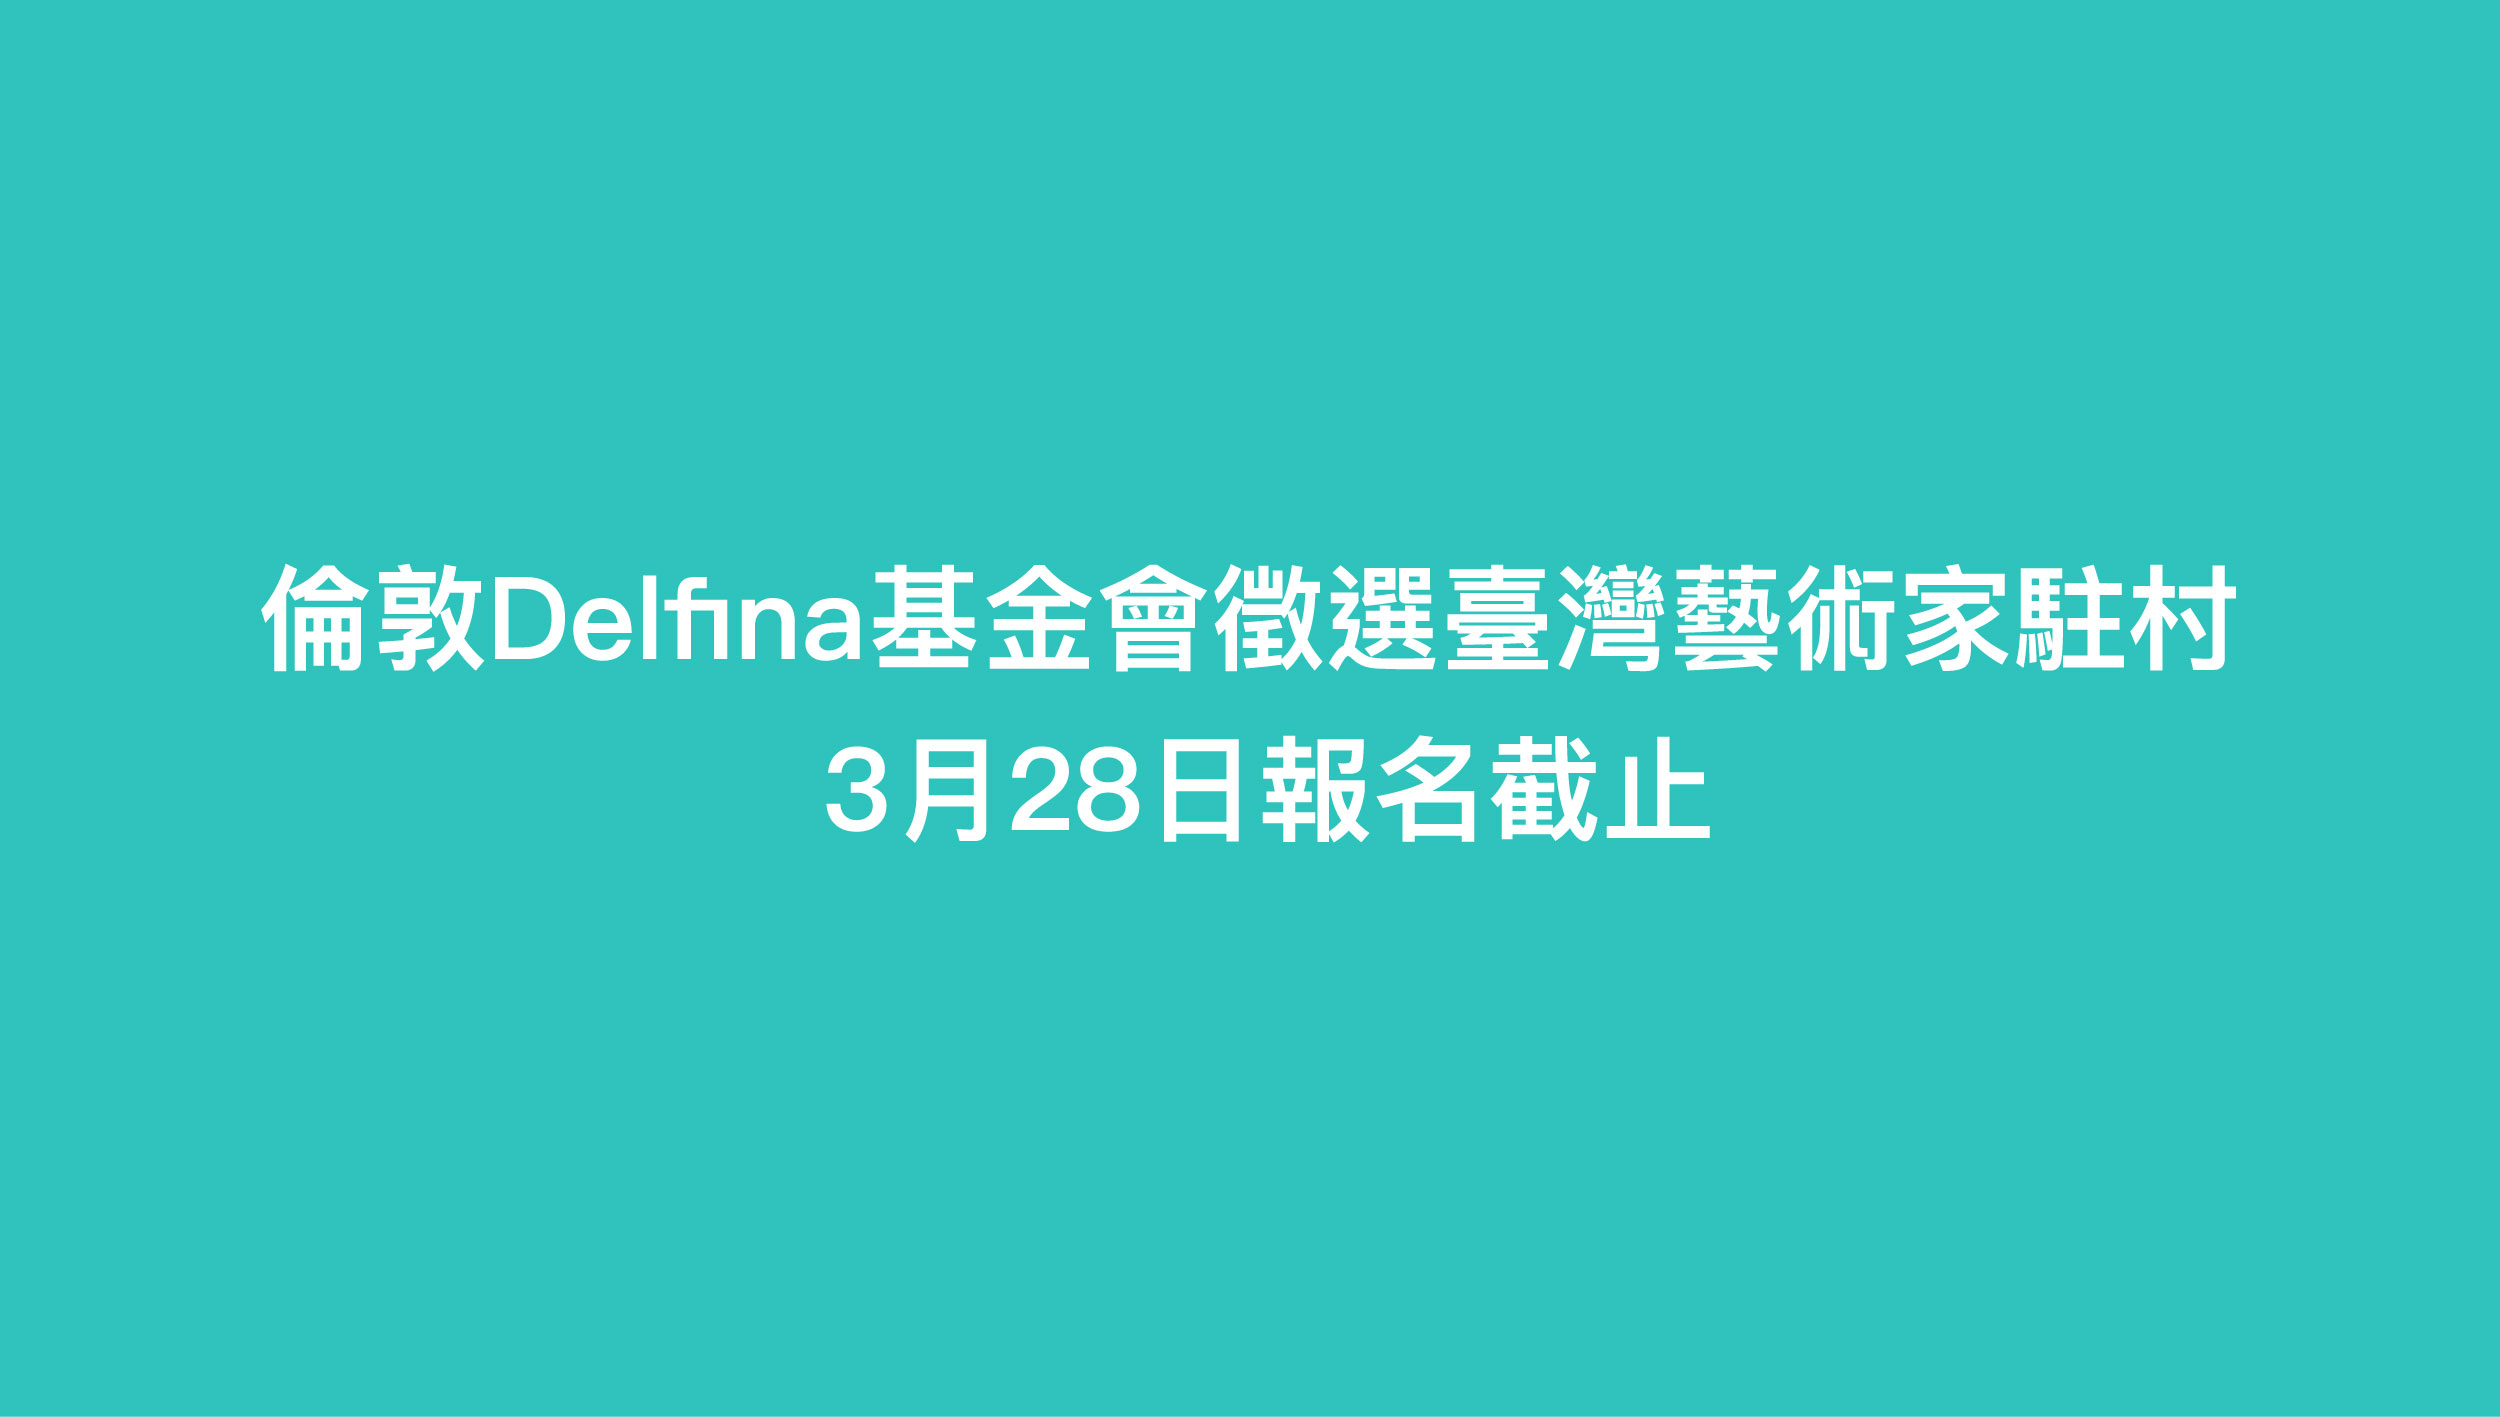 倫敦Delfina基金會徵選臺灣藝術家駐村 3月28日報名截止